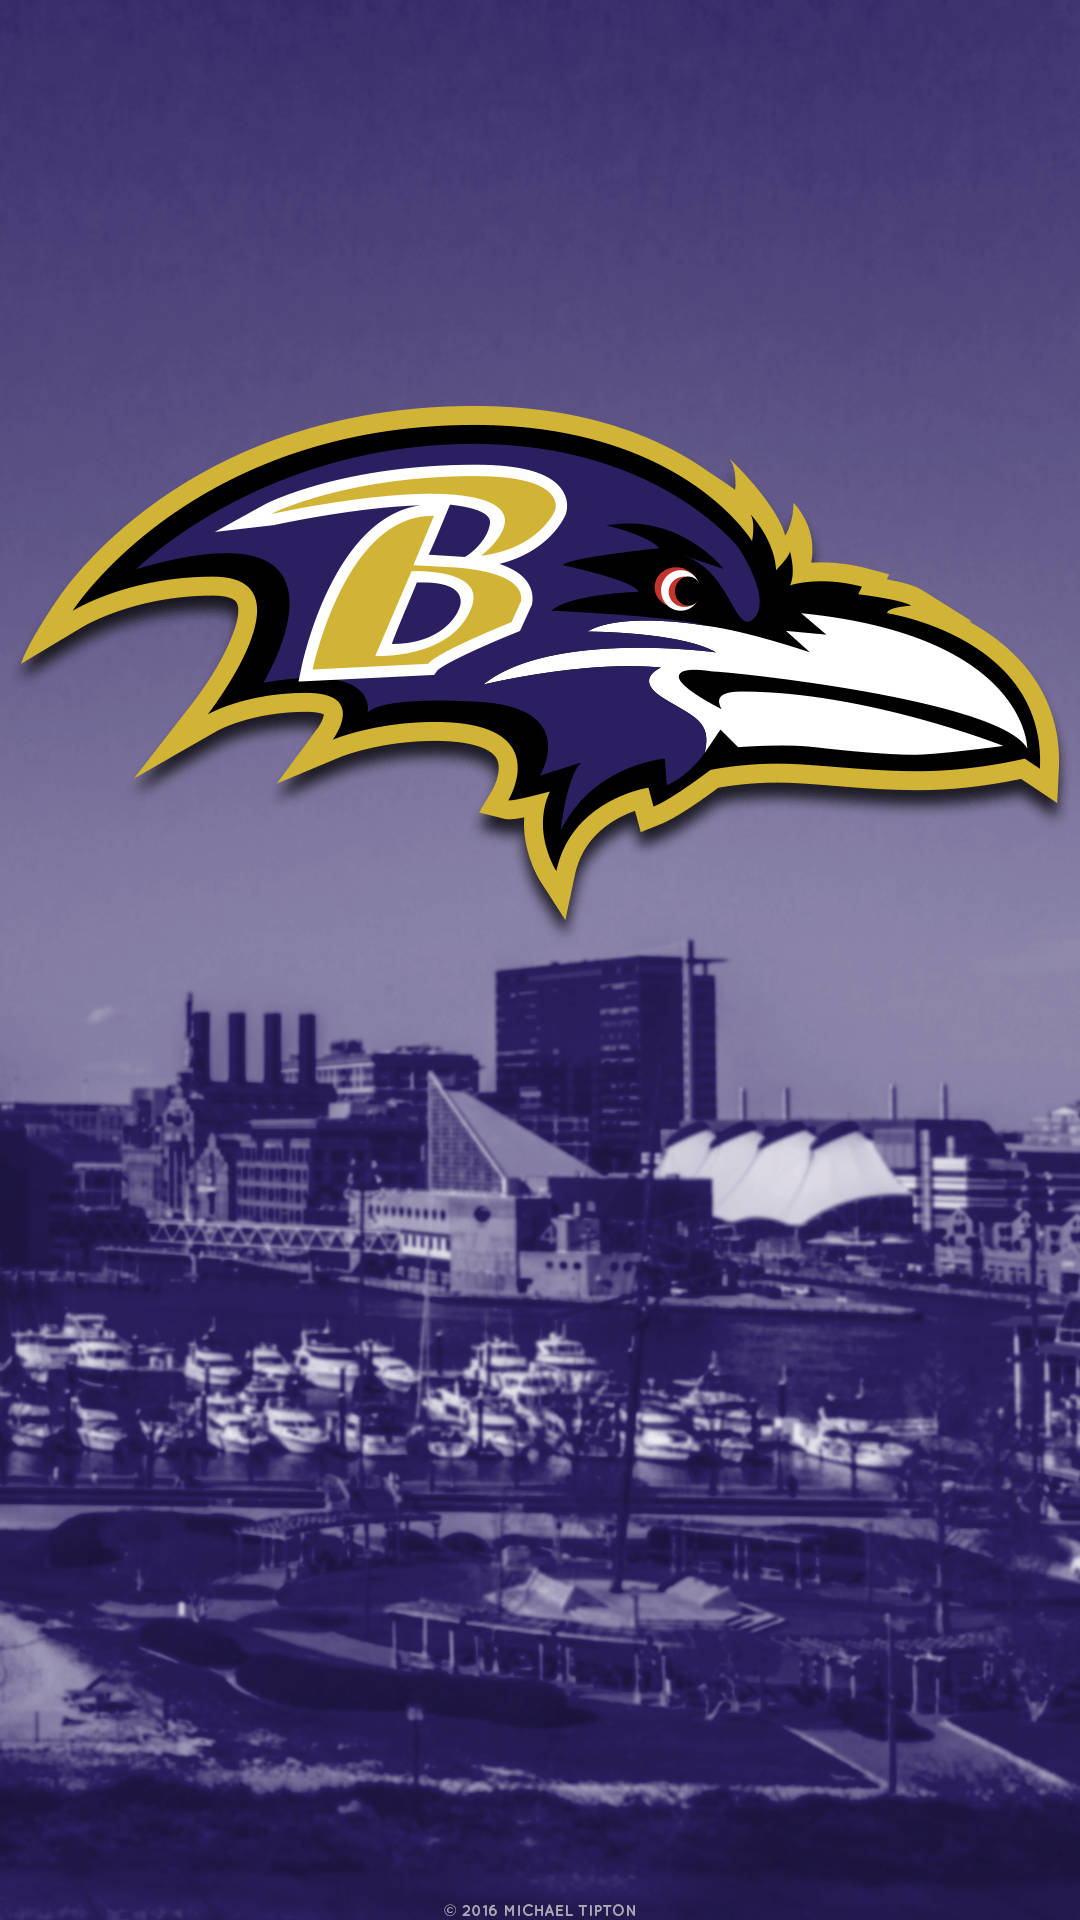 Vis din kærlighed til Baltimore Ravens med din iPhone baggrund. Wallpaper